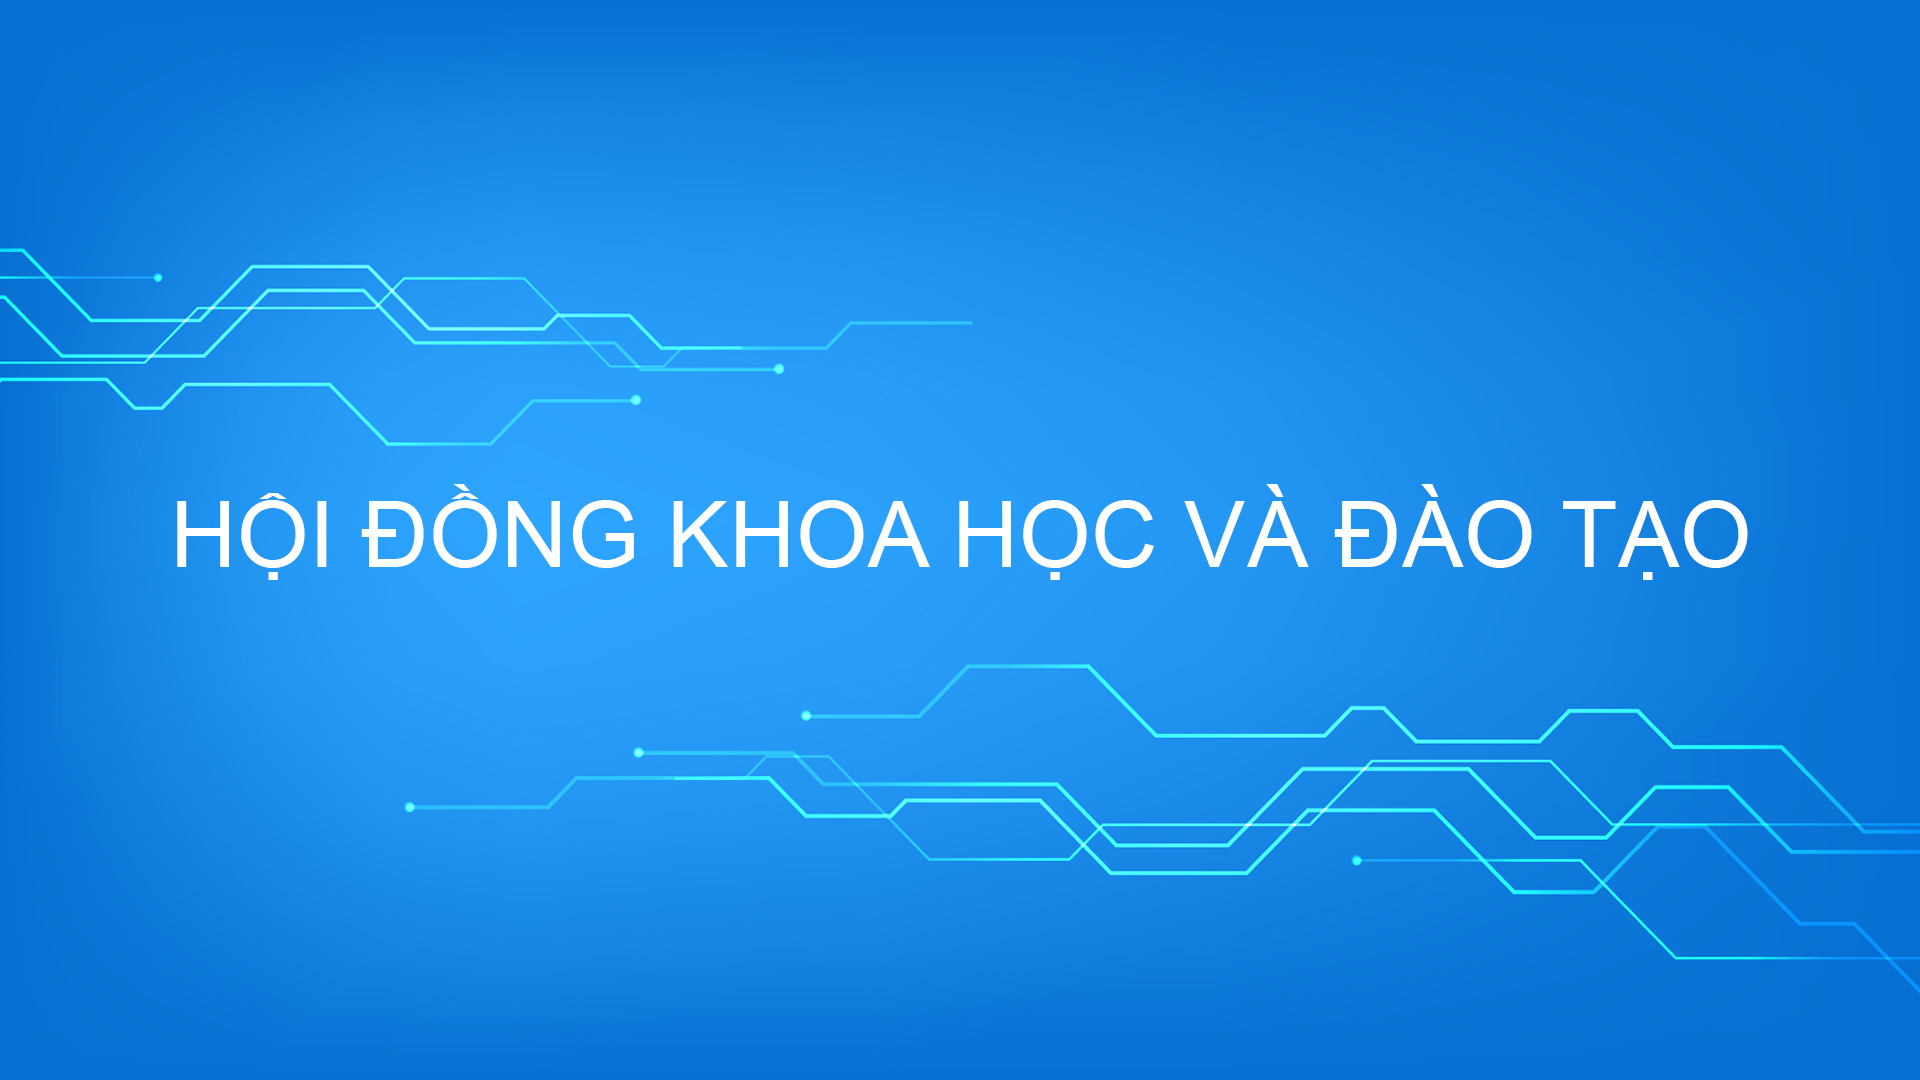 HOI DONG KHOA HOC